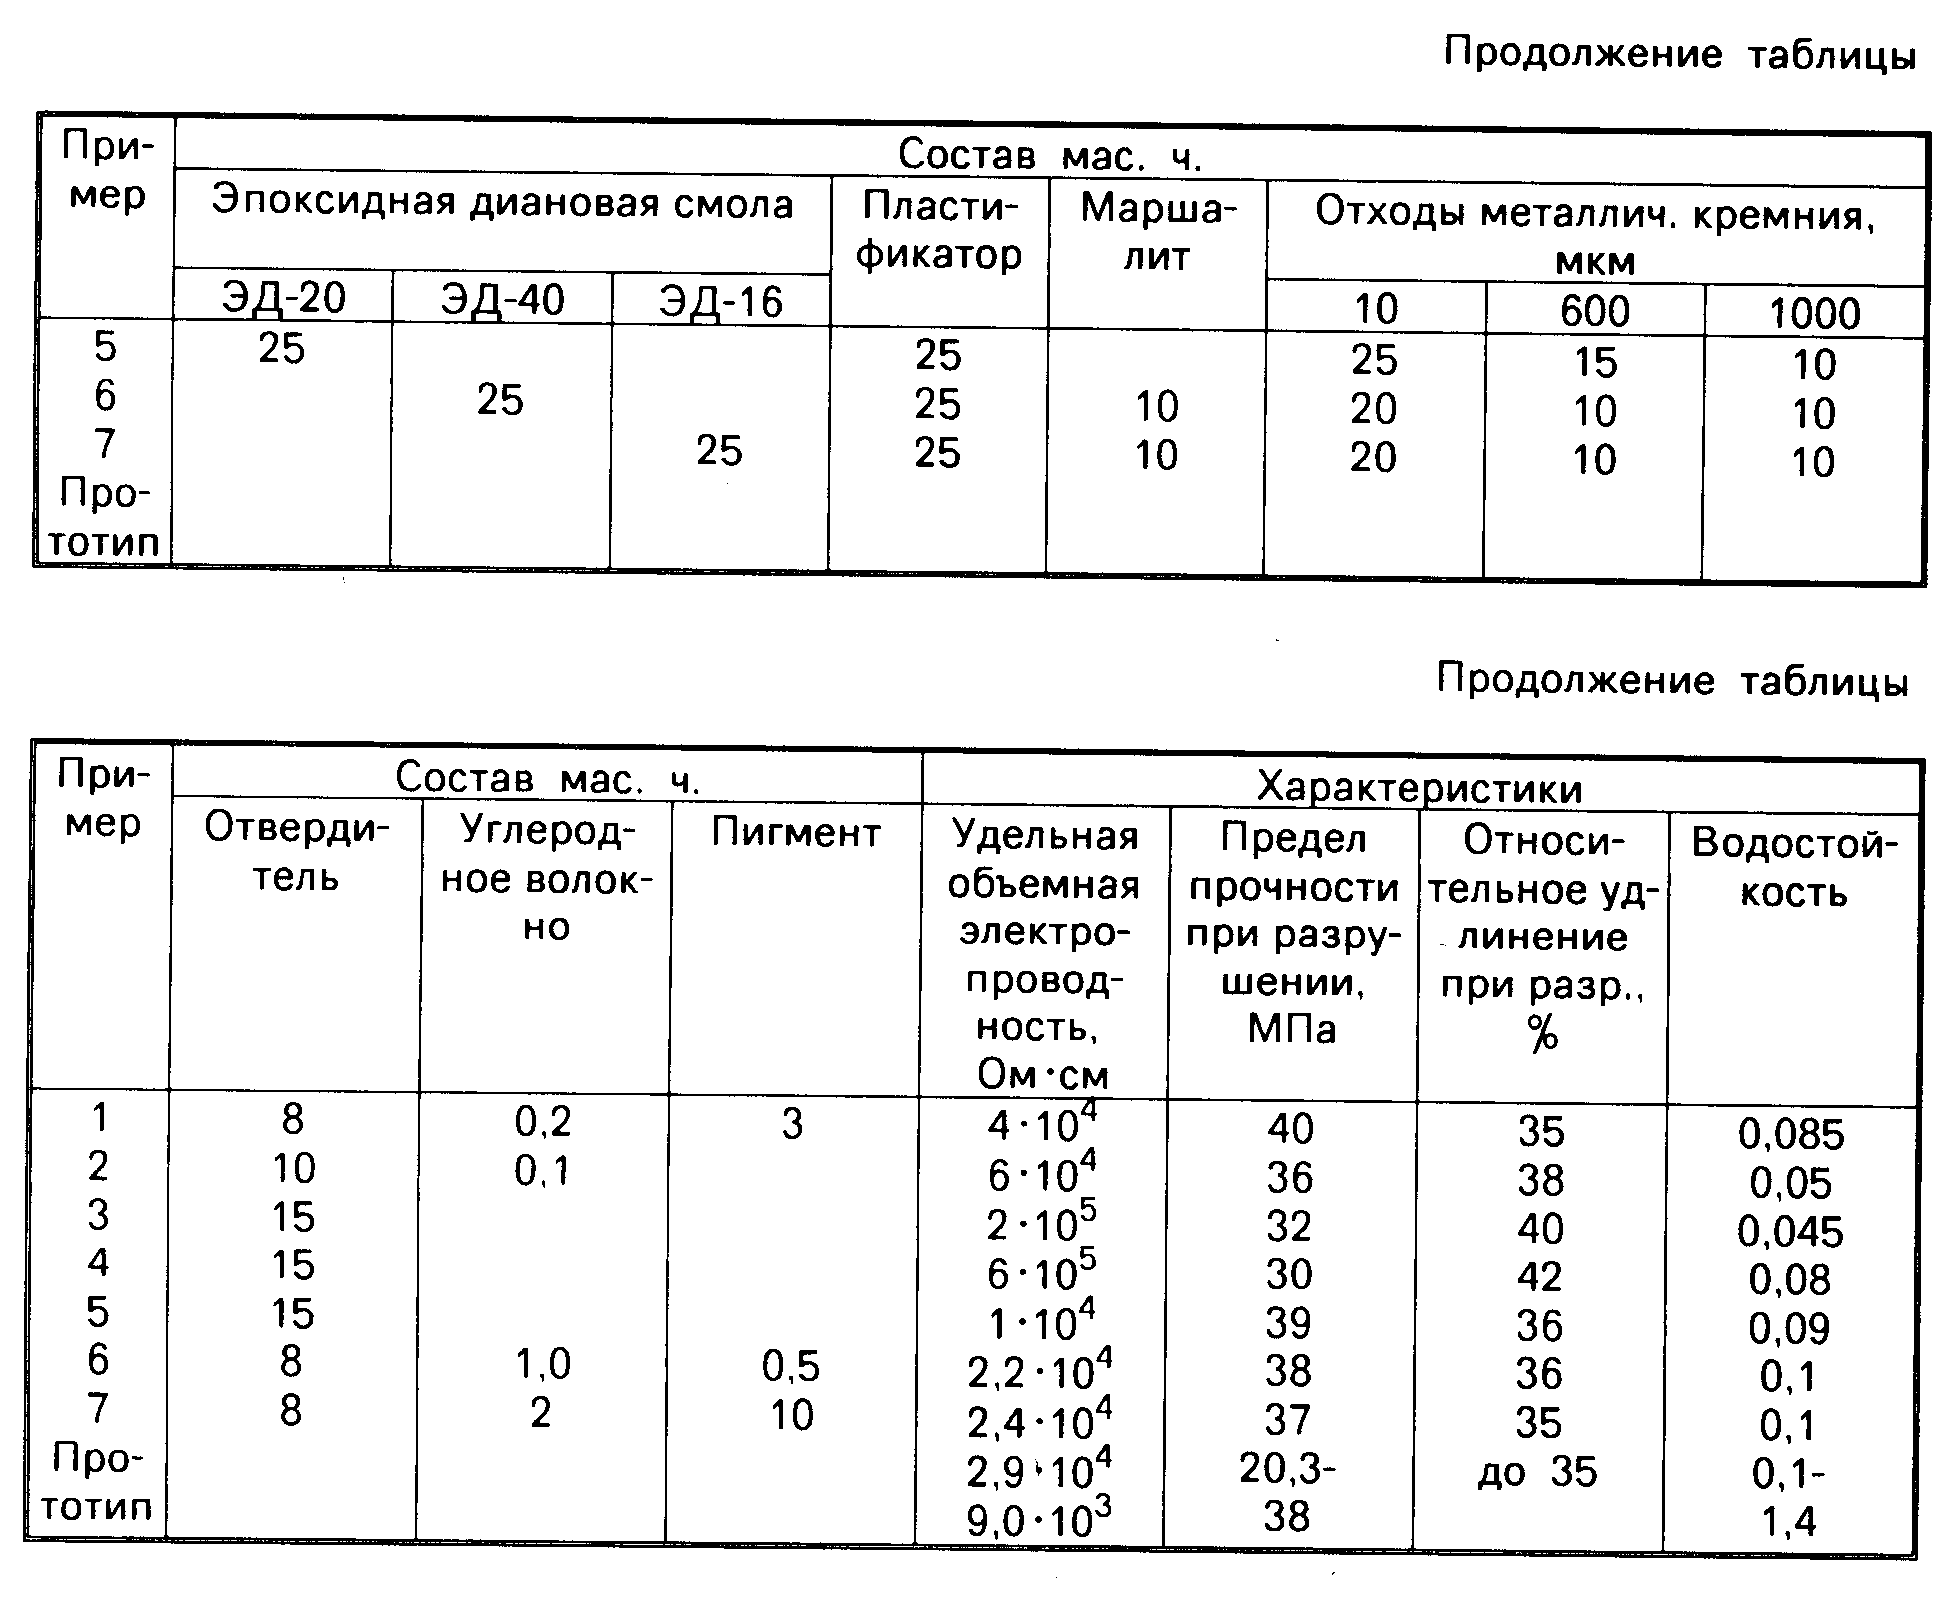 Калькулятор наливного пола - расчёт расхода 1м2